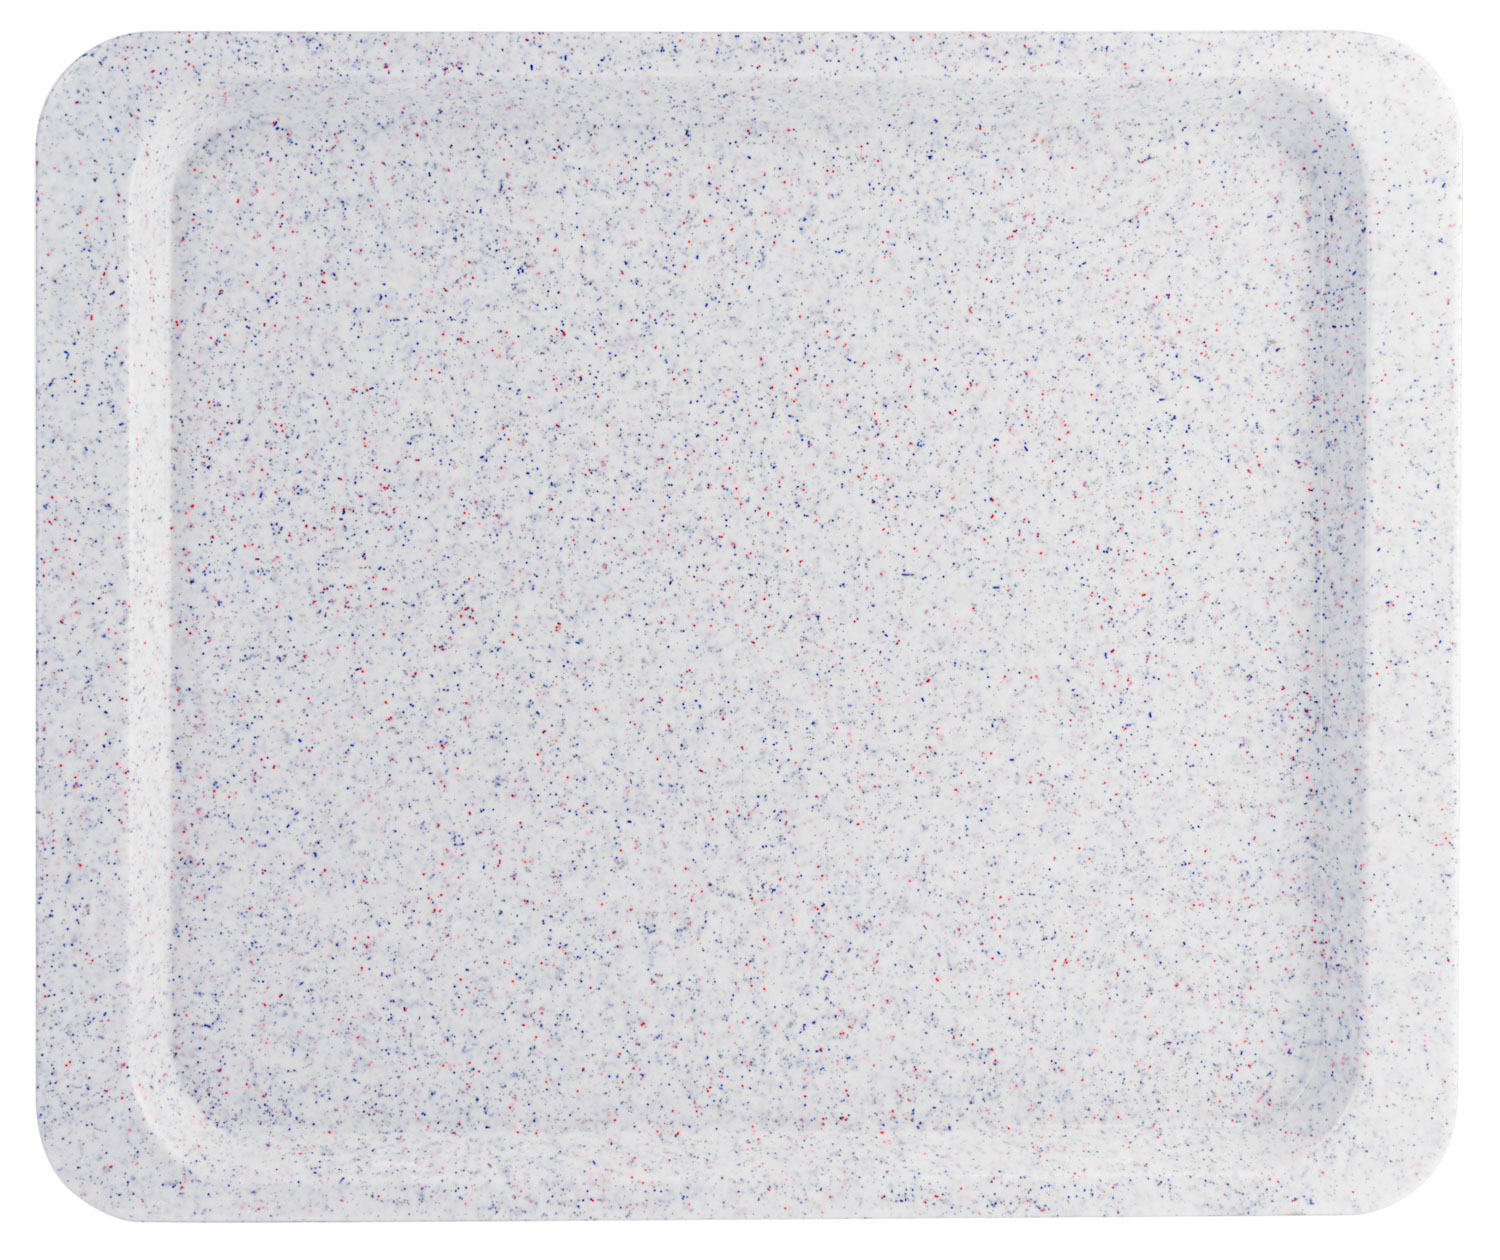 Tablett EASY GastroNorm GN 1/2, Farbe: granit, glasfaserverstärktem Polyesterharz, formbeständig, hitzebeständig bis +140C